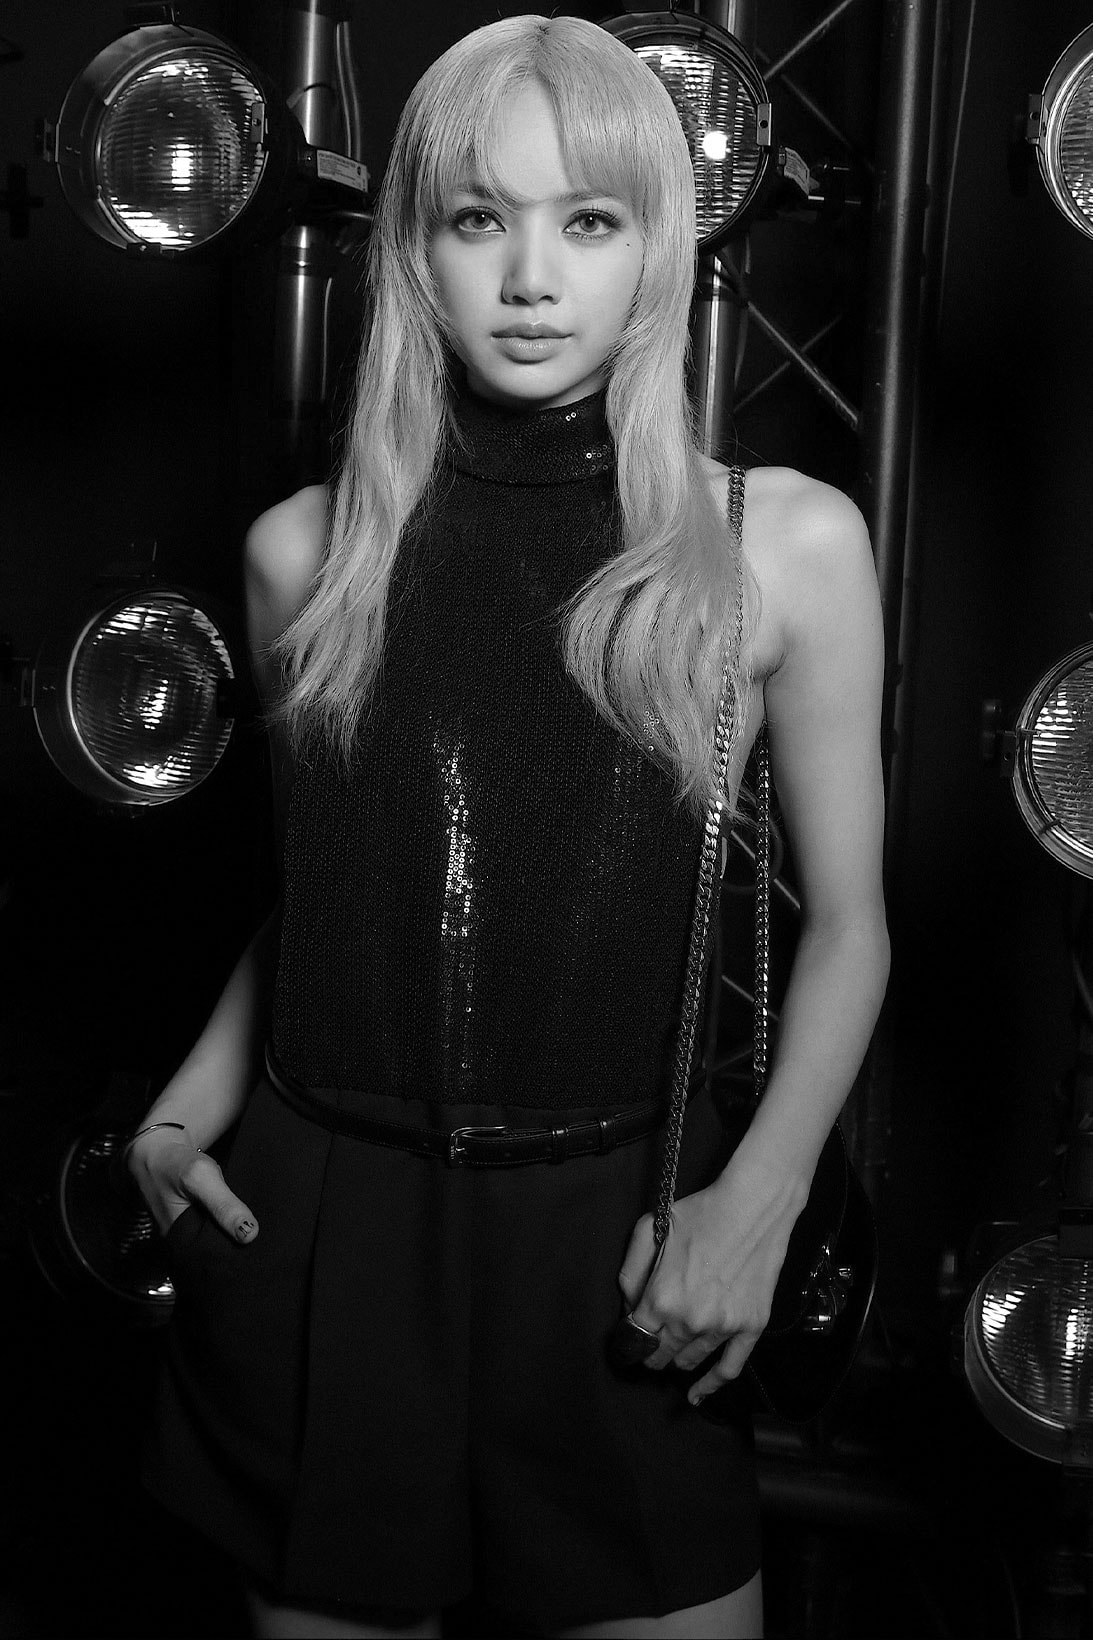 Celine Homme Summer 2023 BLACKPINK Lisa BTS V Taehyung Paris Fashion Week Show Celebrities Images